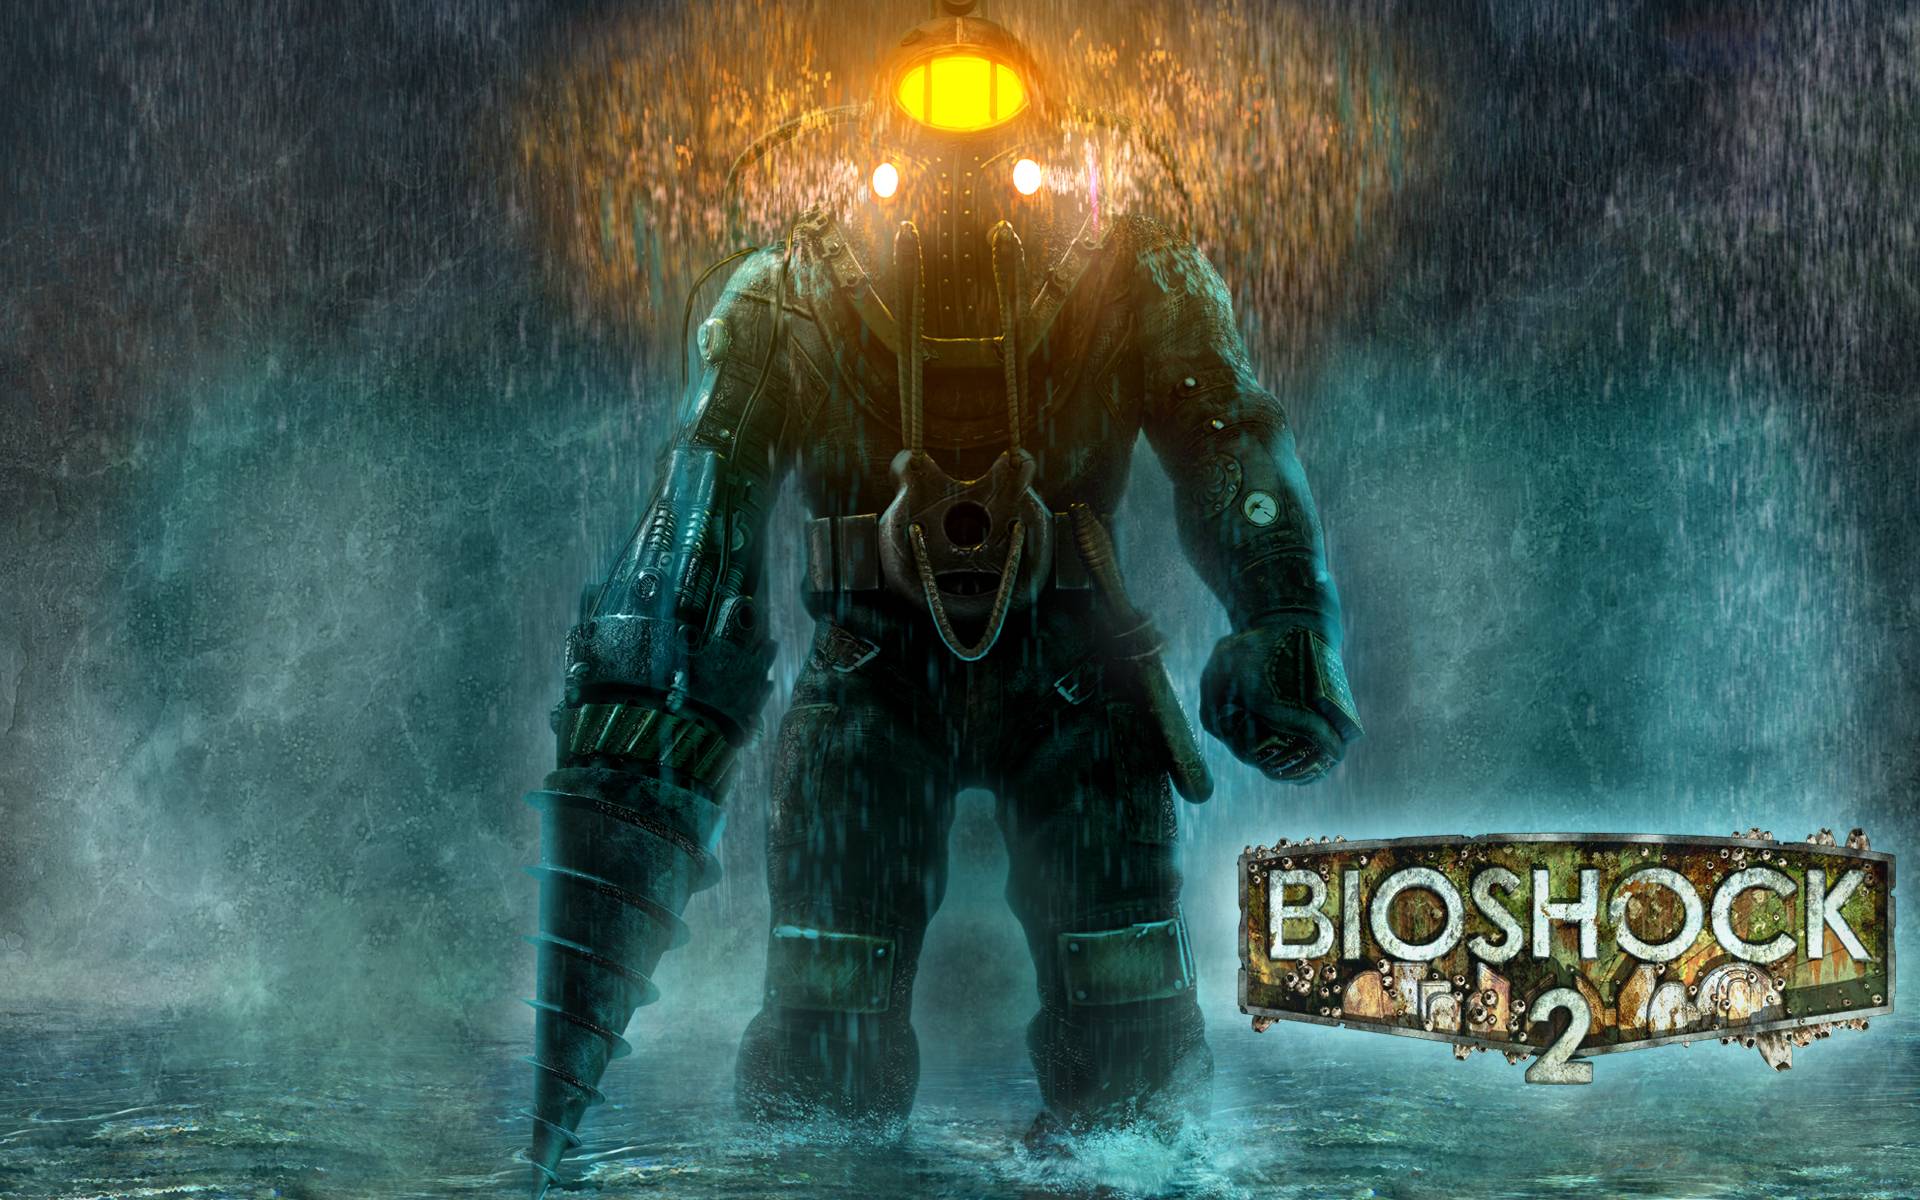 Bioshock 2 Wallpaper. Bioshock 2 Background